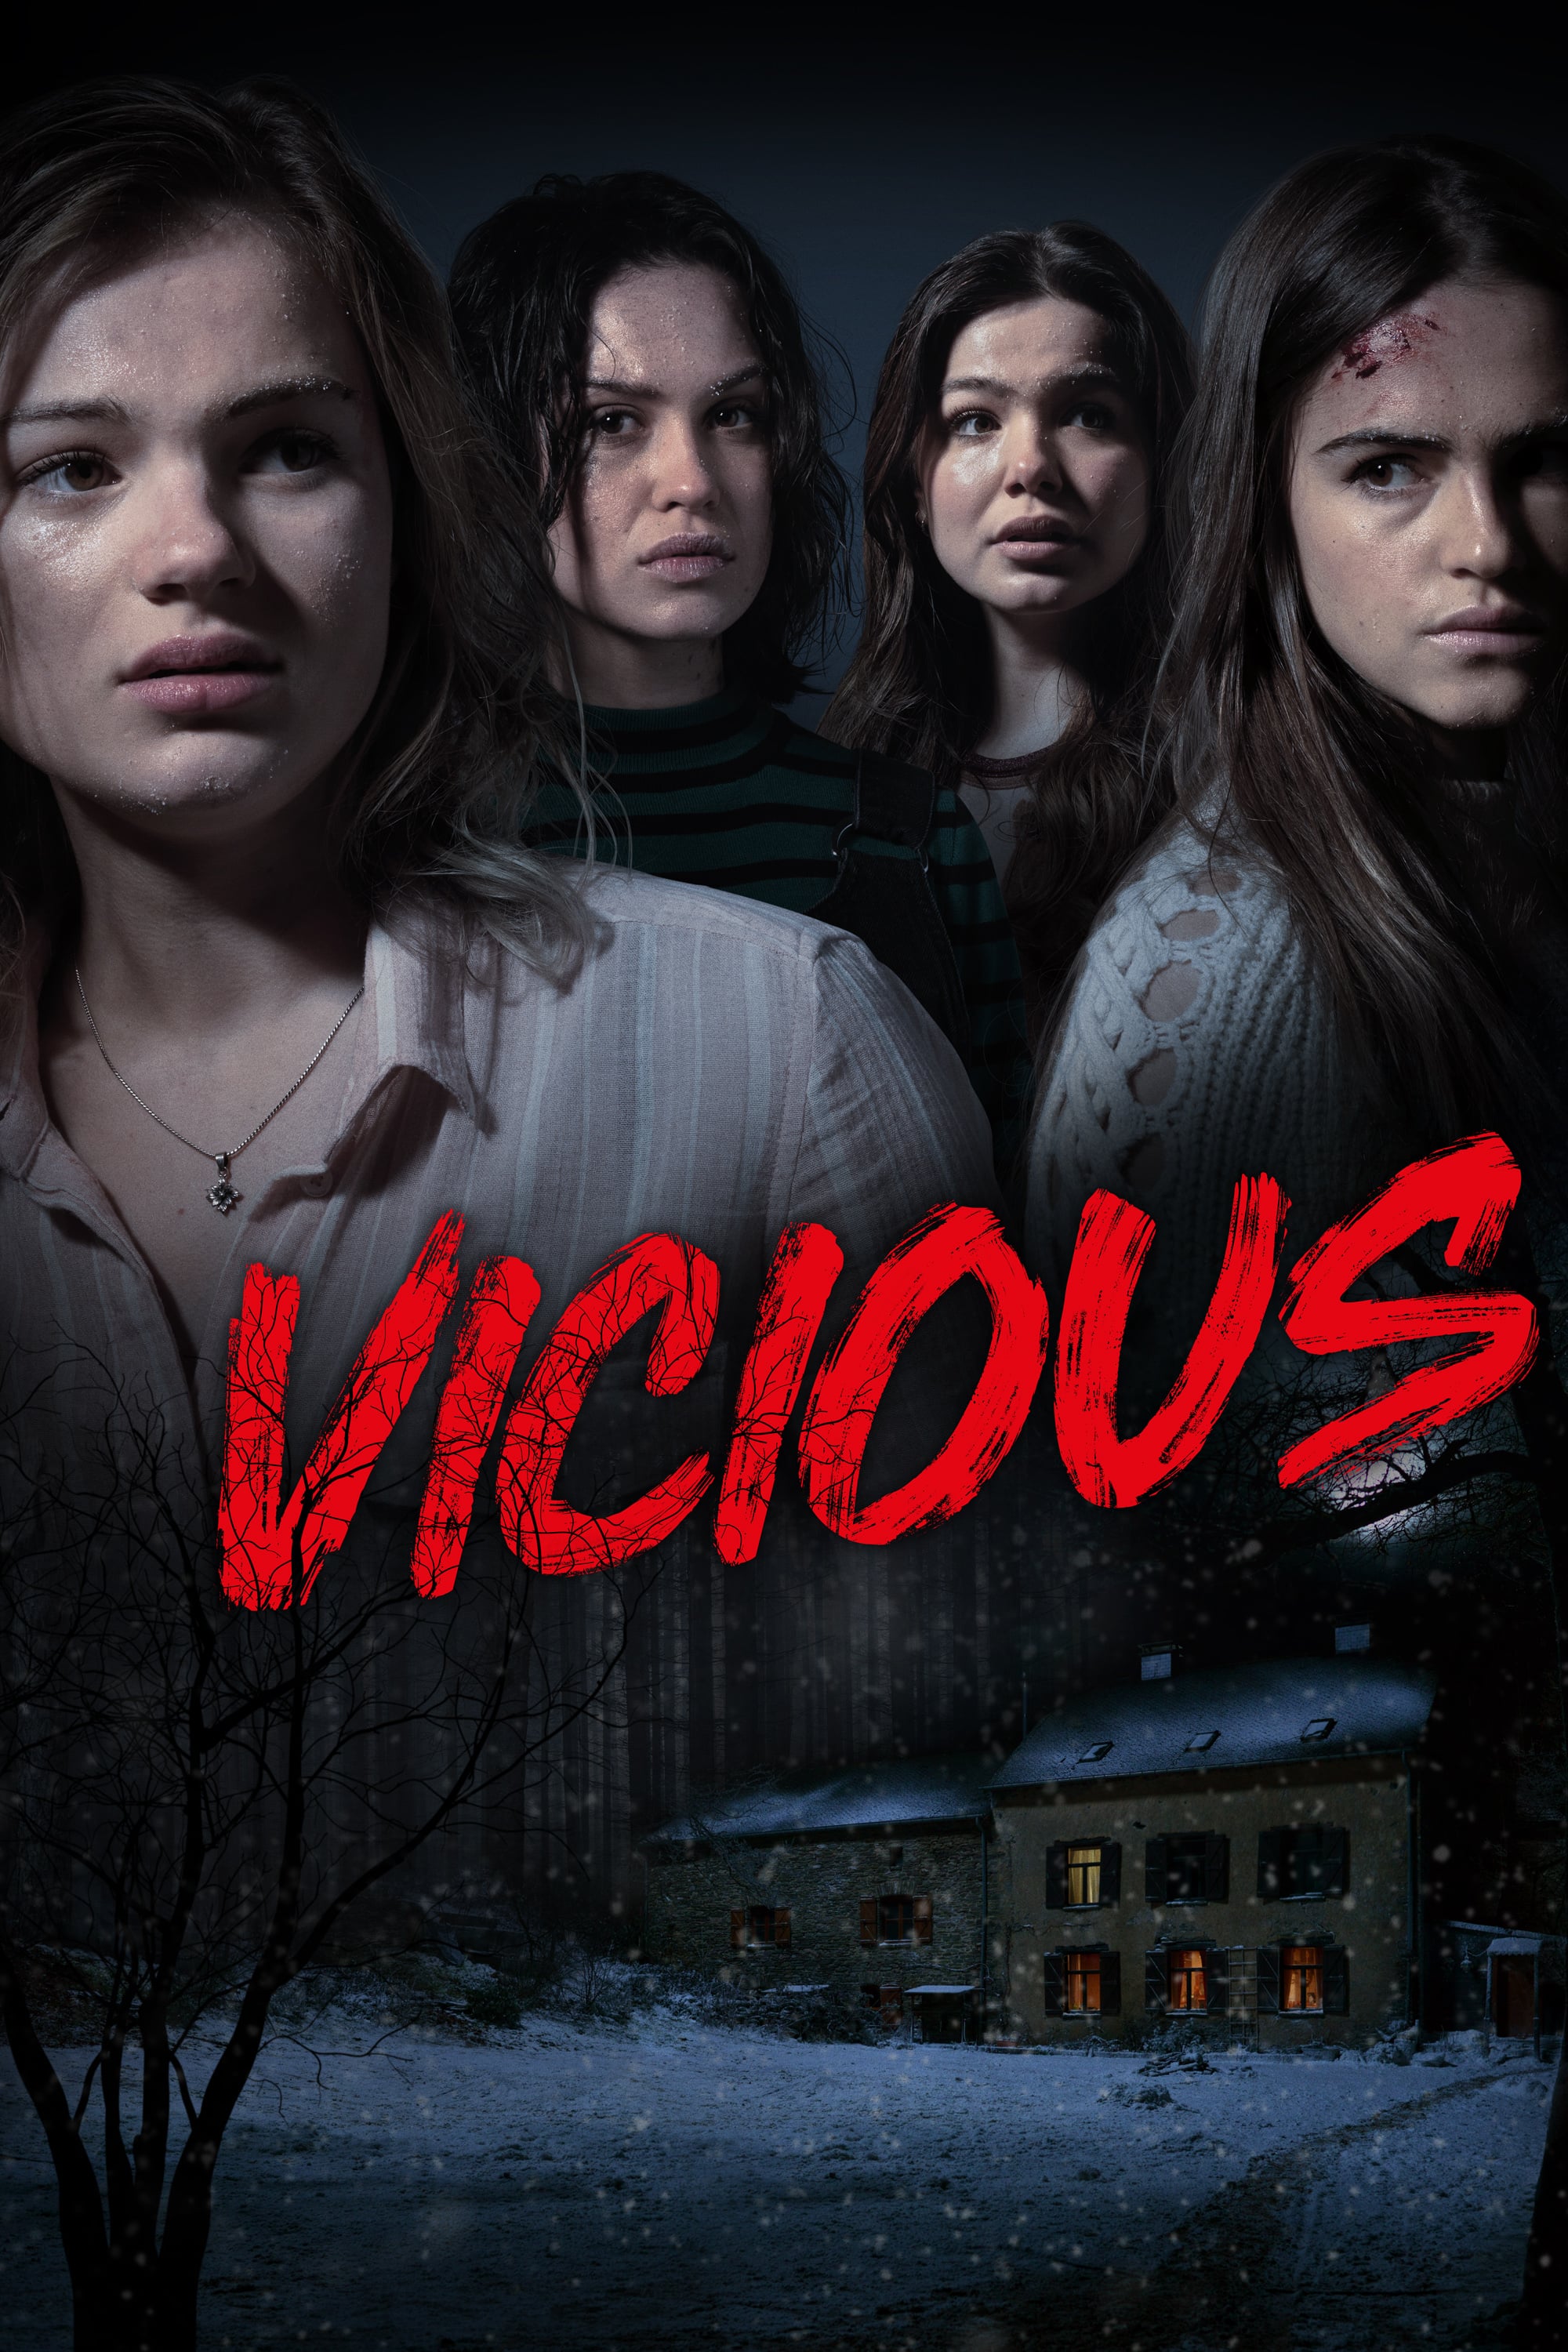 Vicious (2019) Main Poster